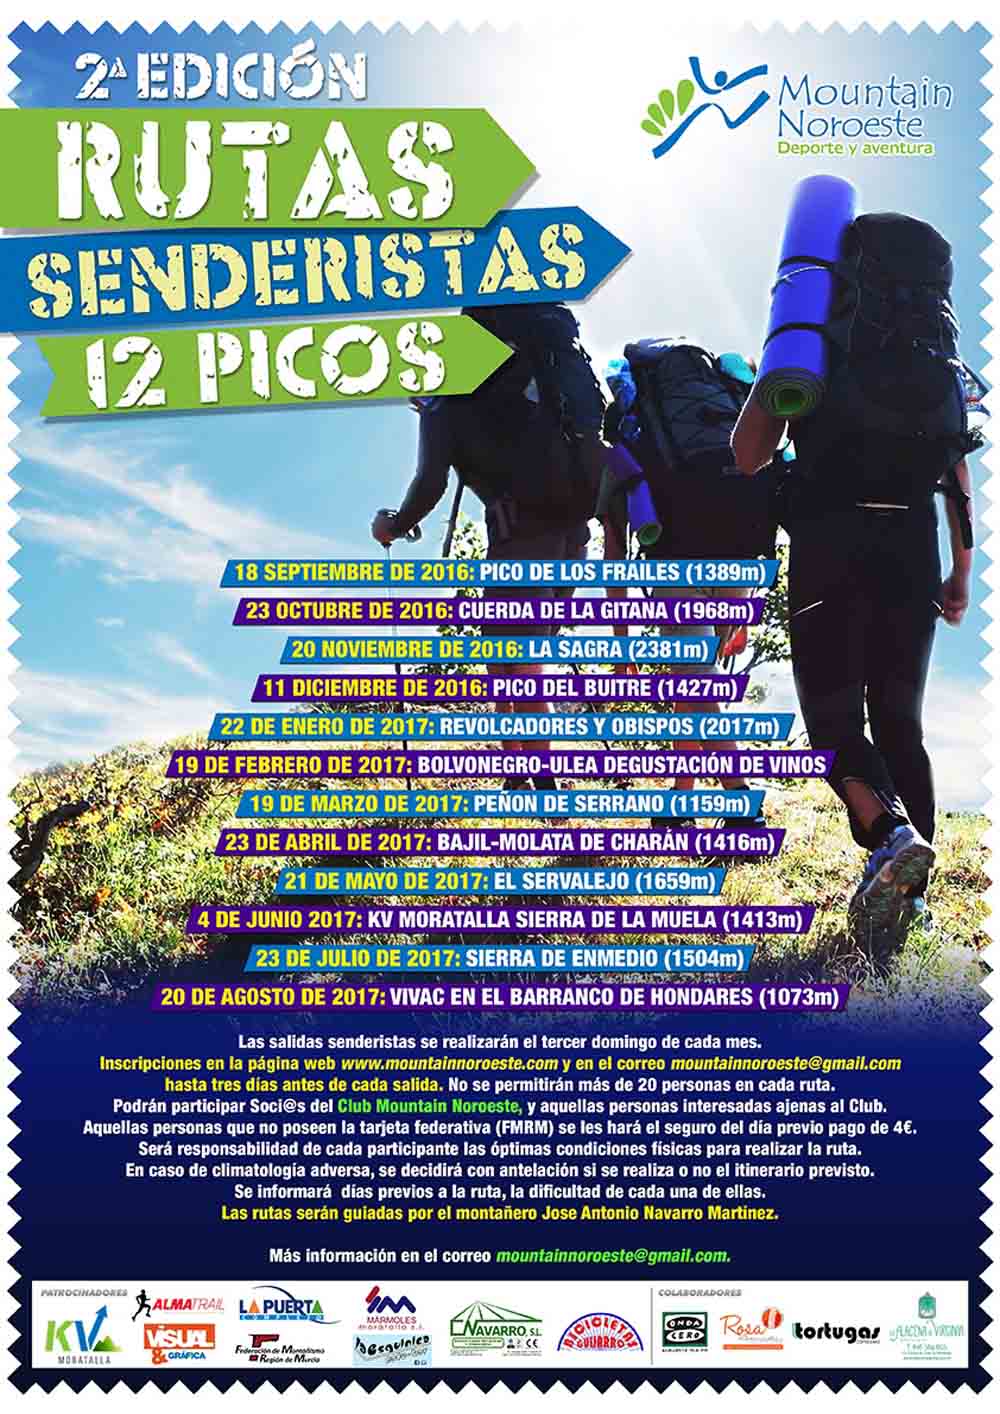 Segunda edición de Rutas Senderistas 12 Picos organizada por el Club Mountain Noroeste